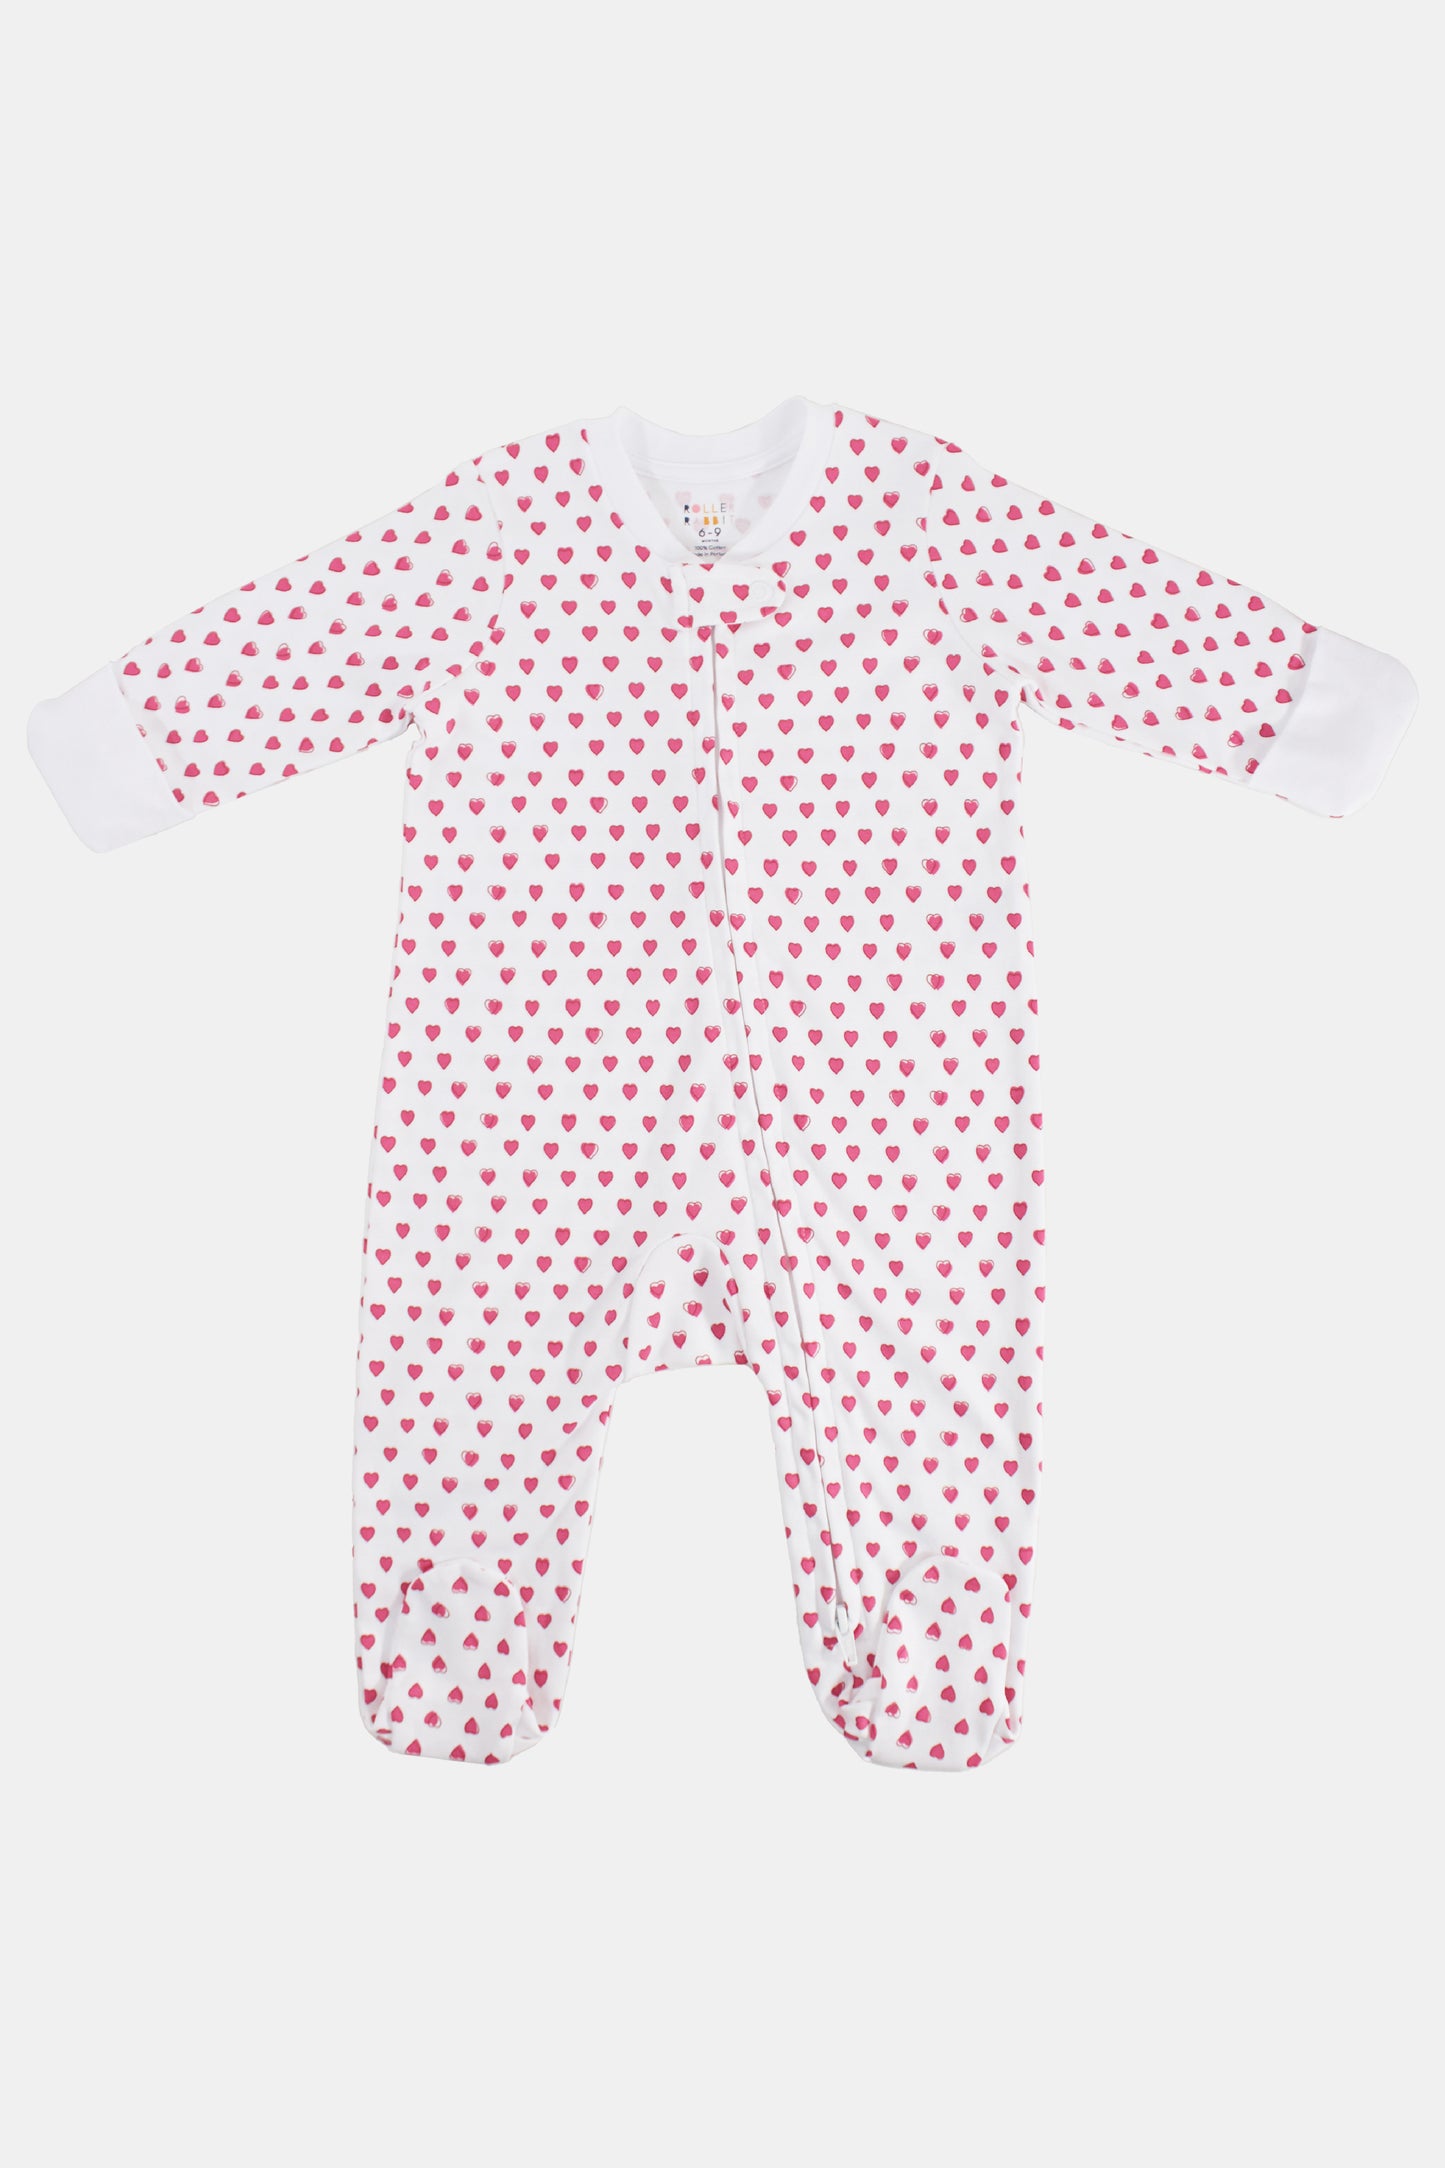 Roller Rabbit Pink Hearts Infant Footie Zipper Pajama